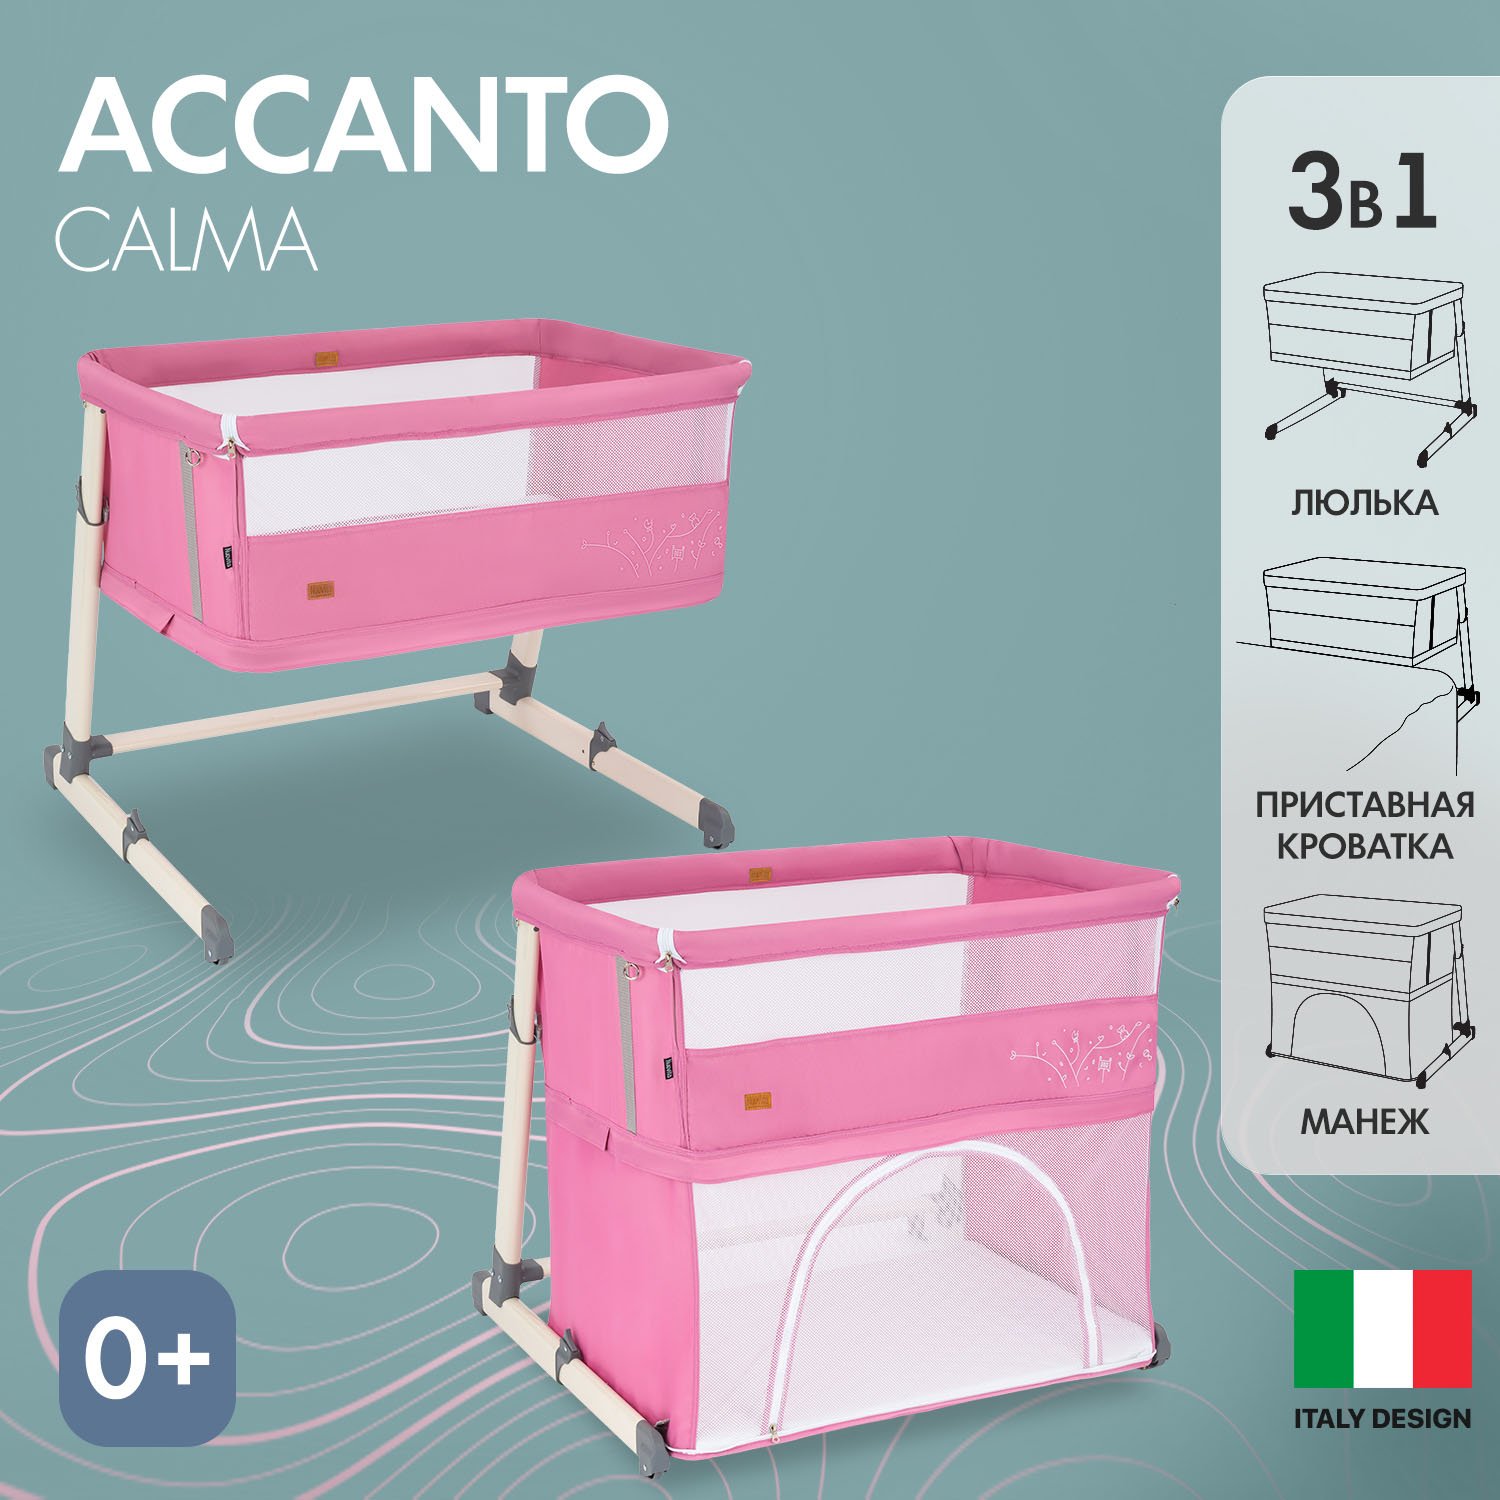 Детская приставная кроватка Nuovita Accanto Calma (Rosa/Розовый) кровать детская brioni 4 в 1 белый натуральный кровать манеж диванчик люлька